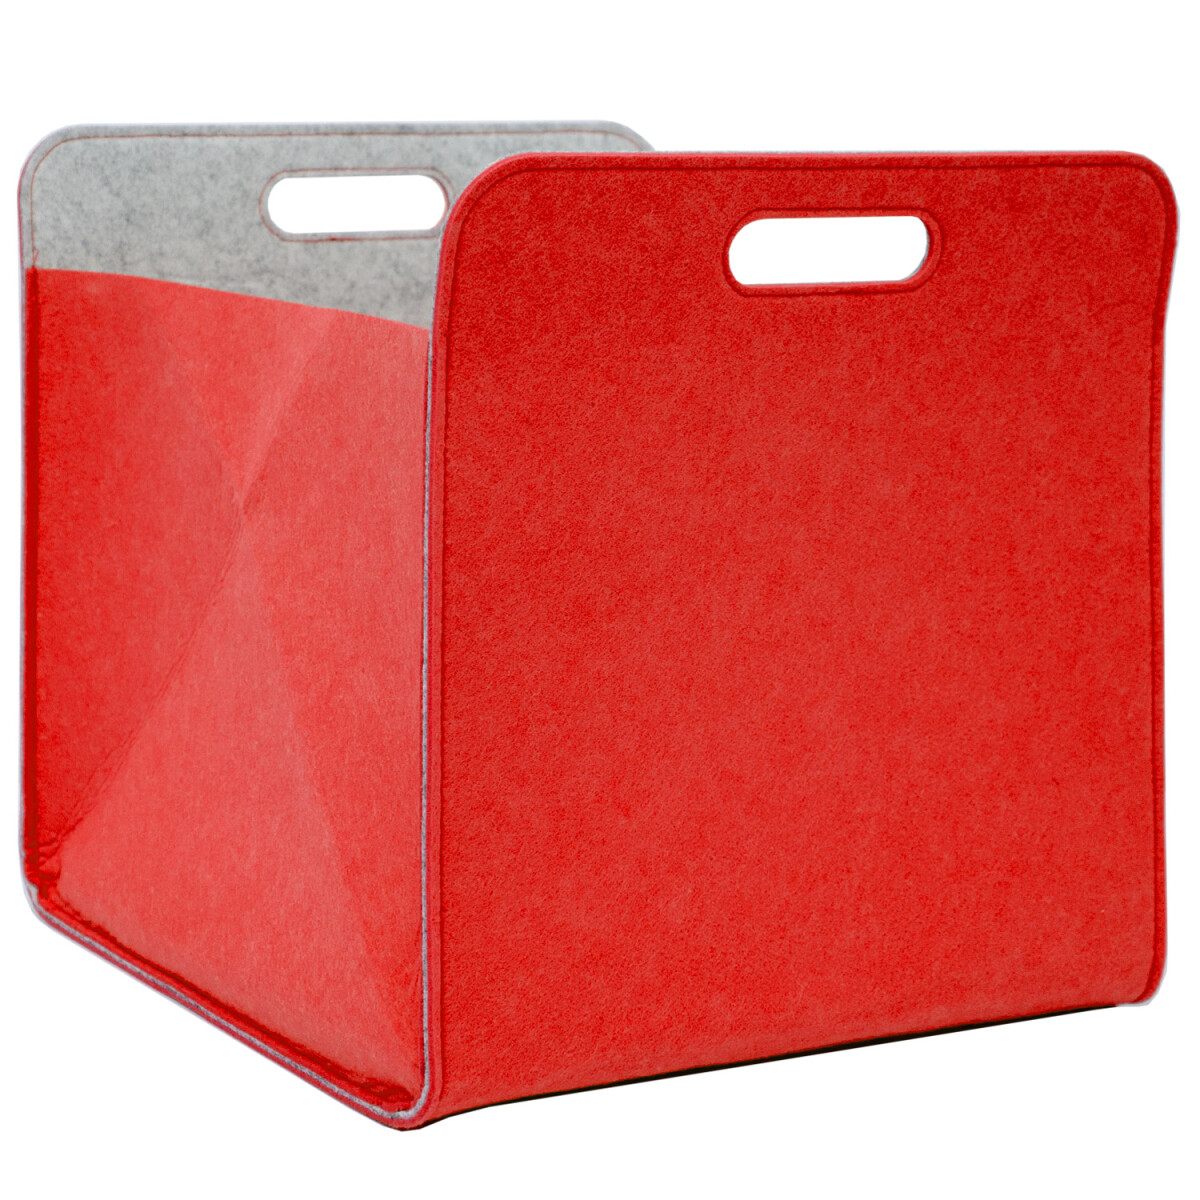 Aufbewahrungsbox 2er Set Cube Filz 33x38x33cm Rot